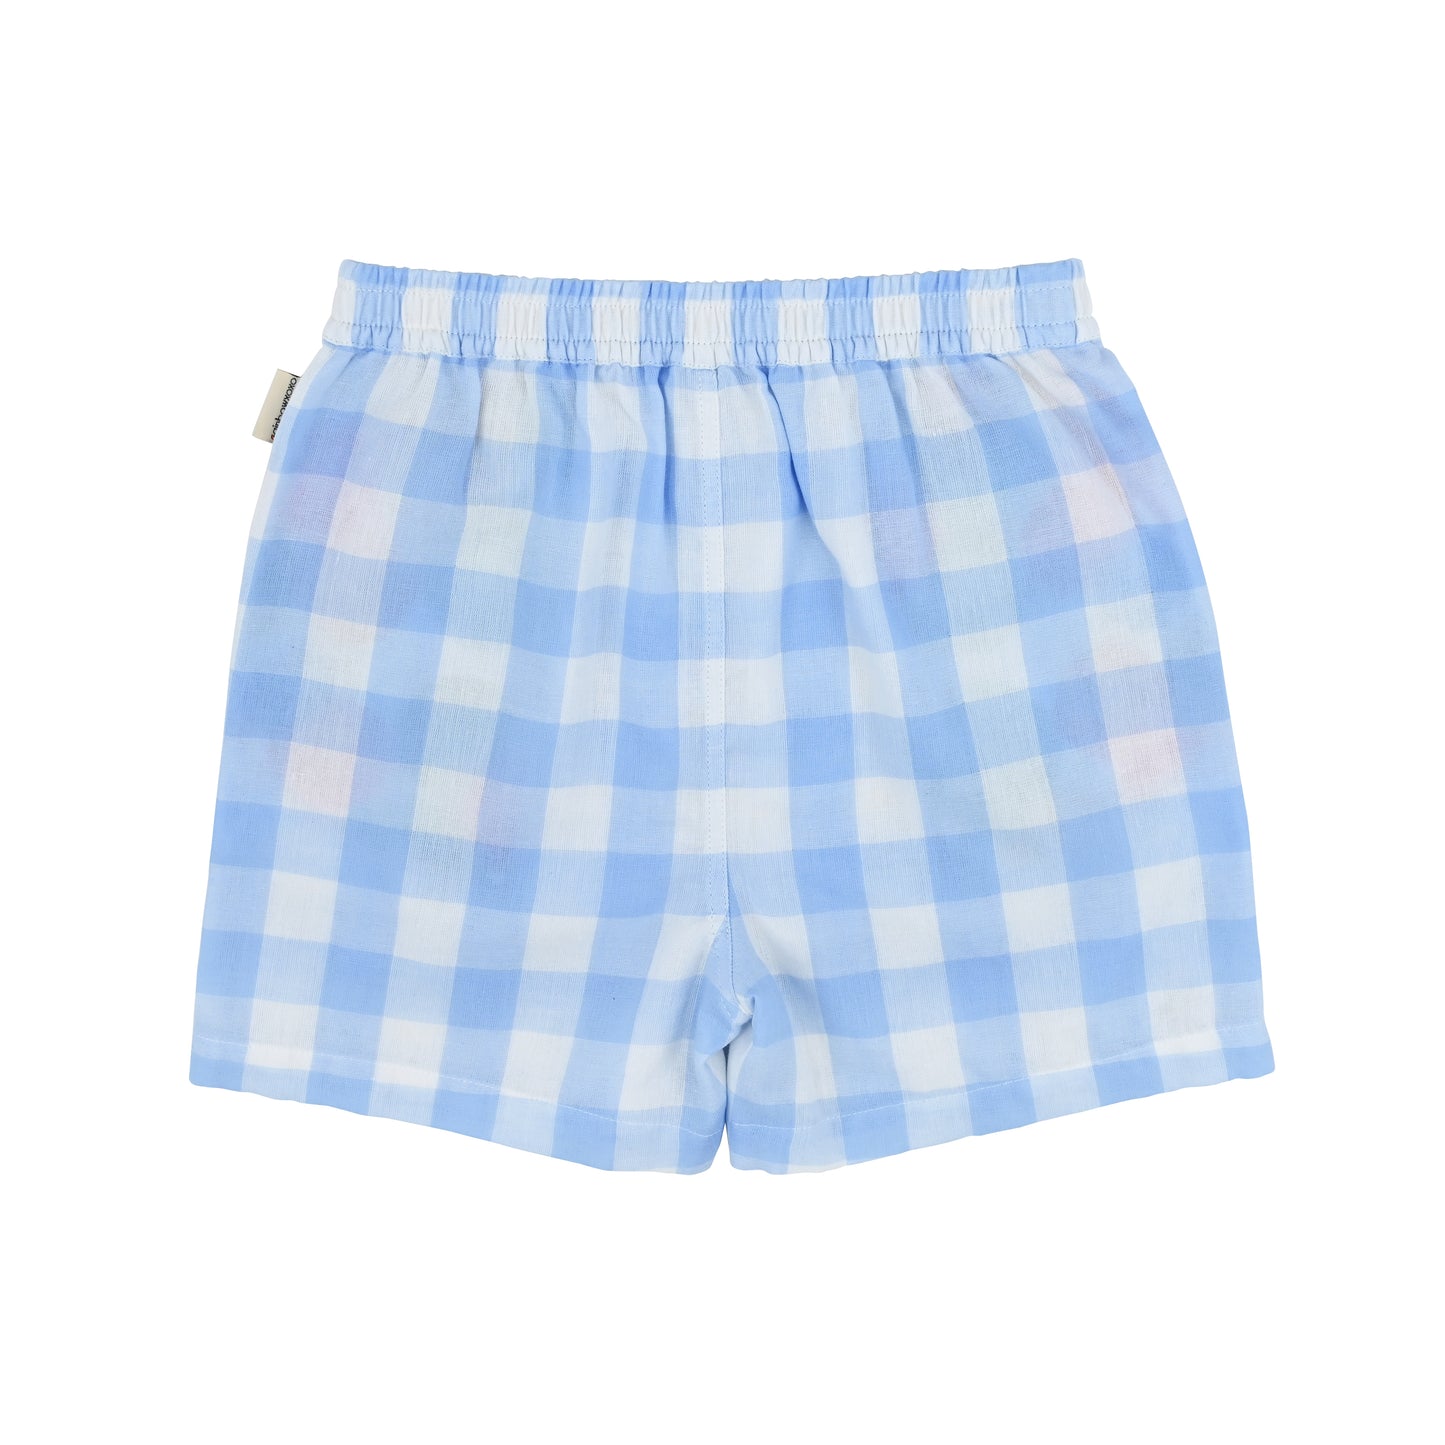 童裝BB衫/男童裝 - 藍色大方格格紋印花短褲